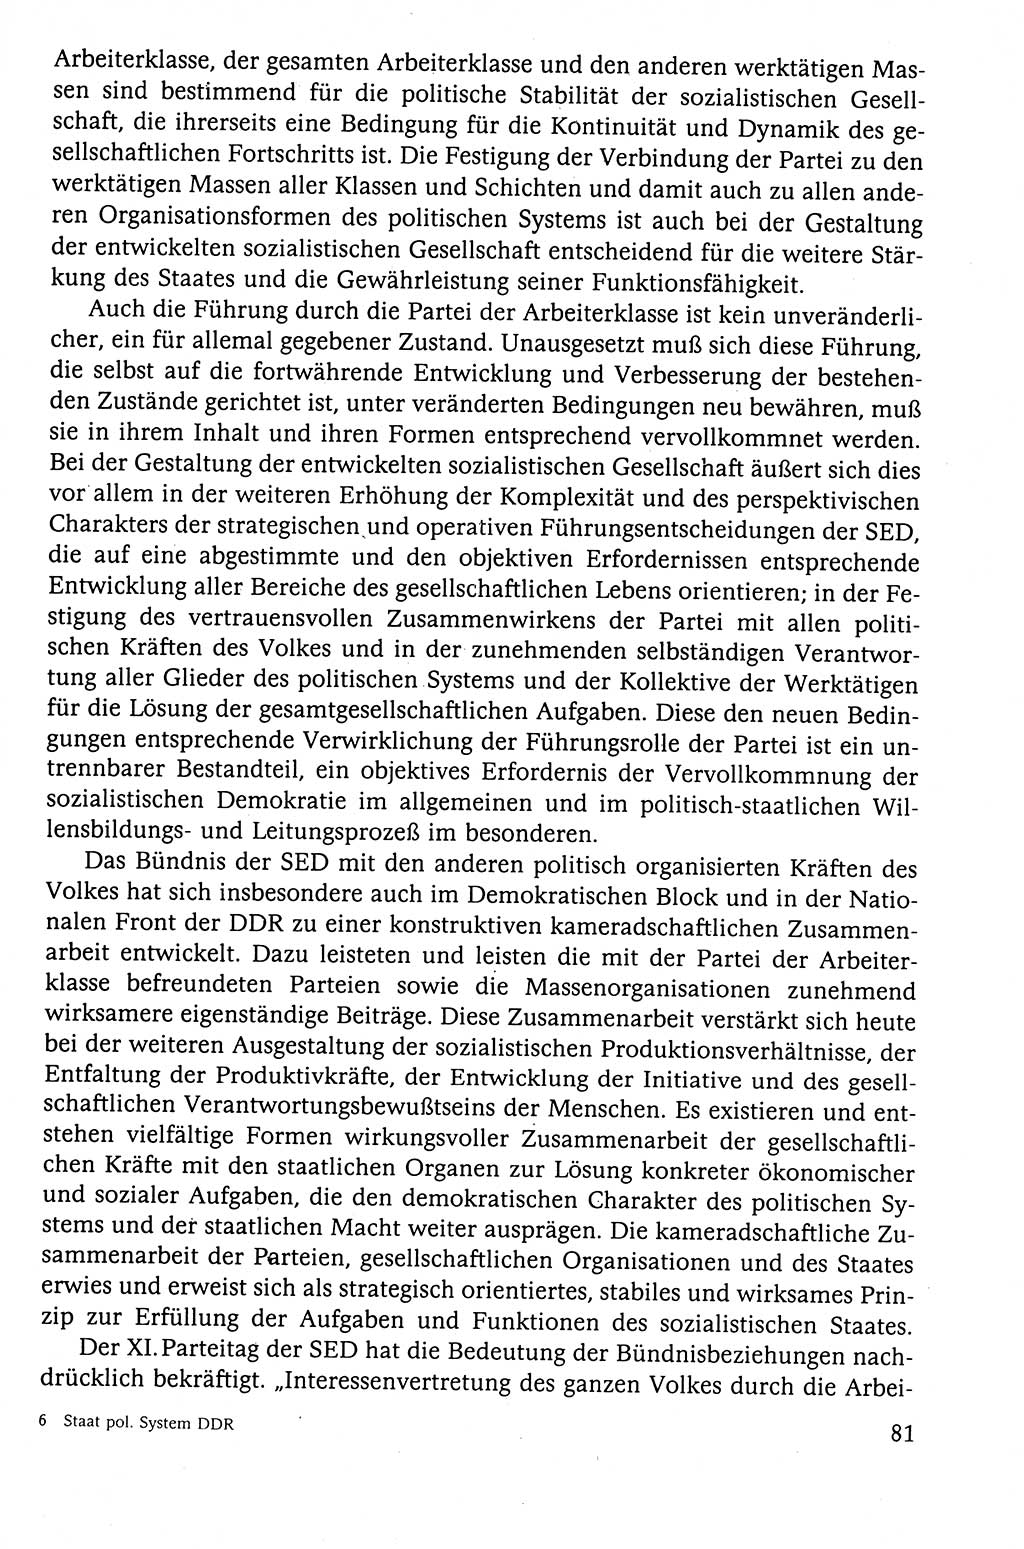 Der Staat im politischen System der DDR (Deutsche Demokratische Republik) 1986, Seite 81 (St. pol. Sys. DDR 1986, S. 81)